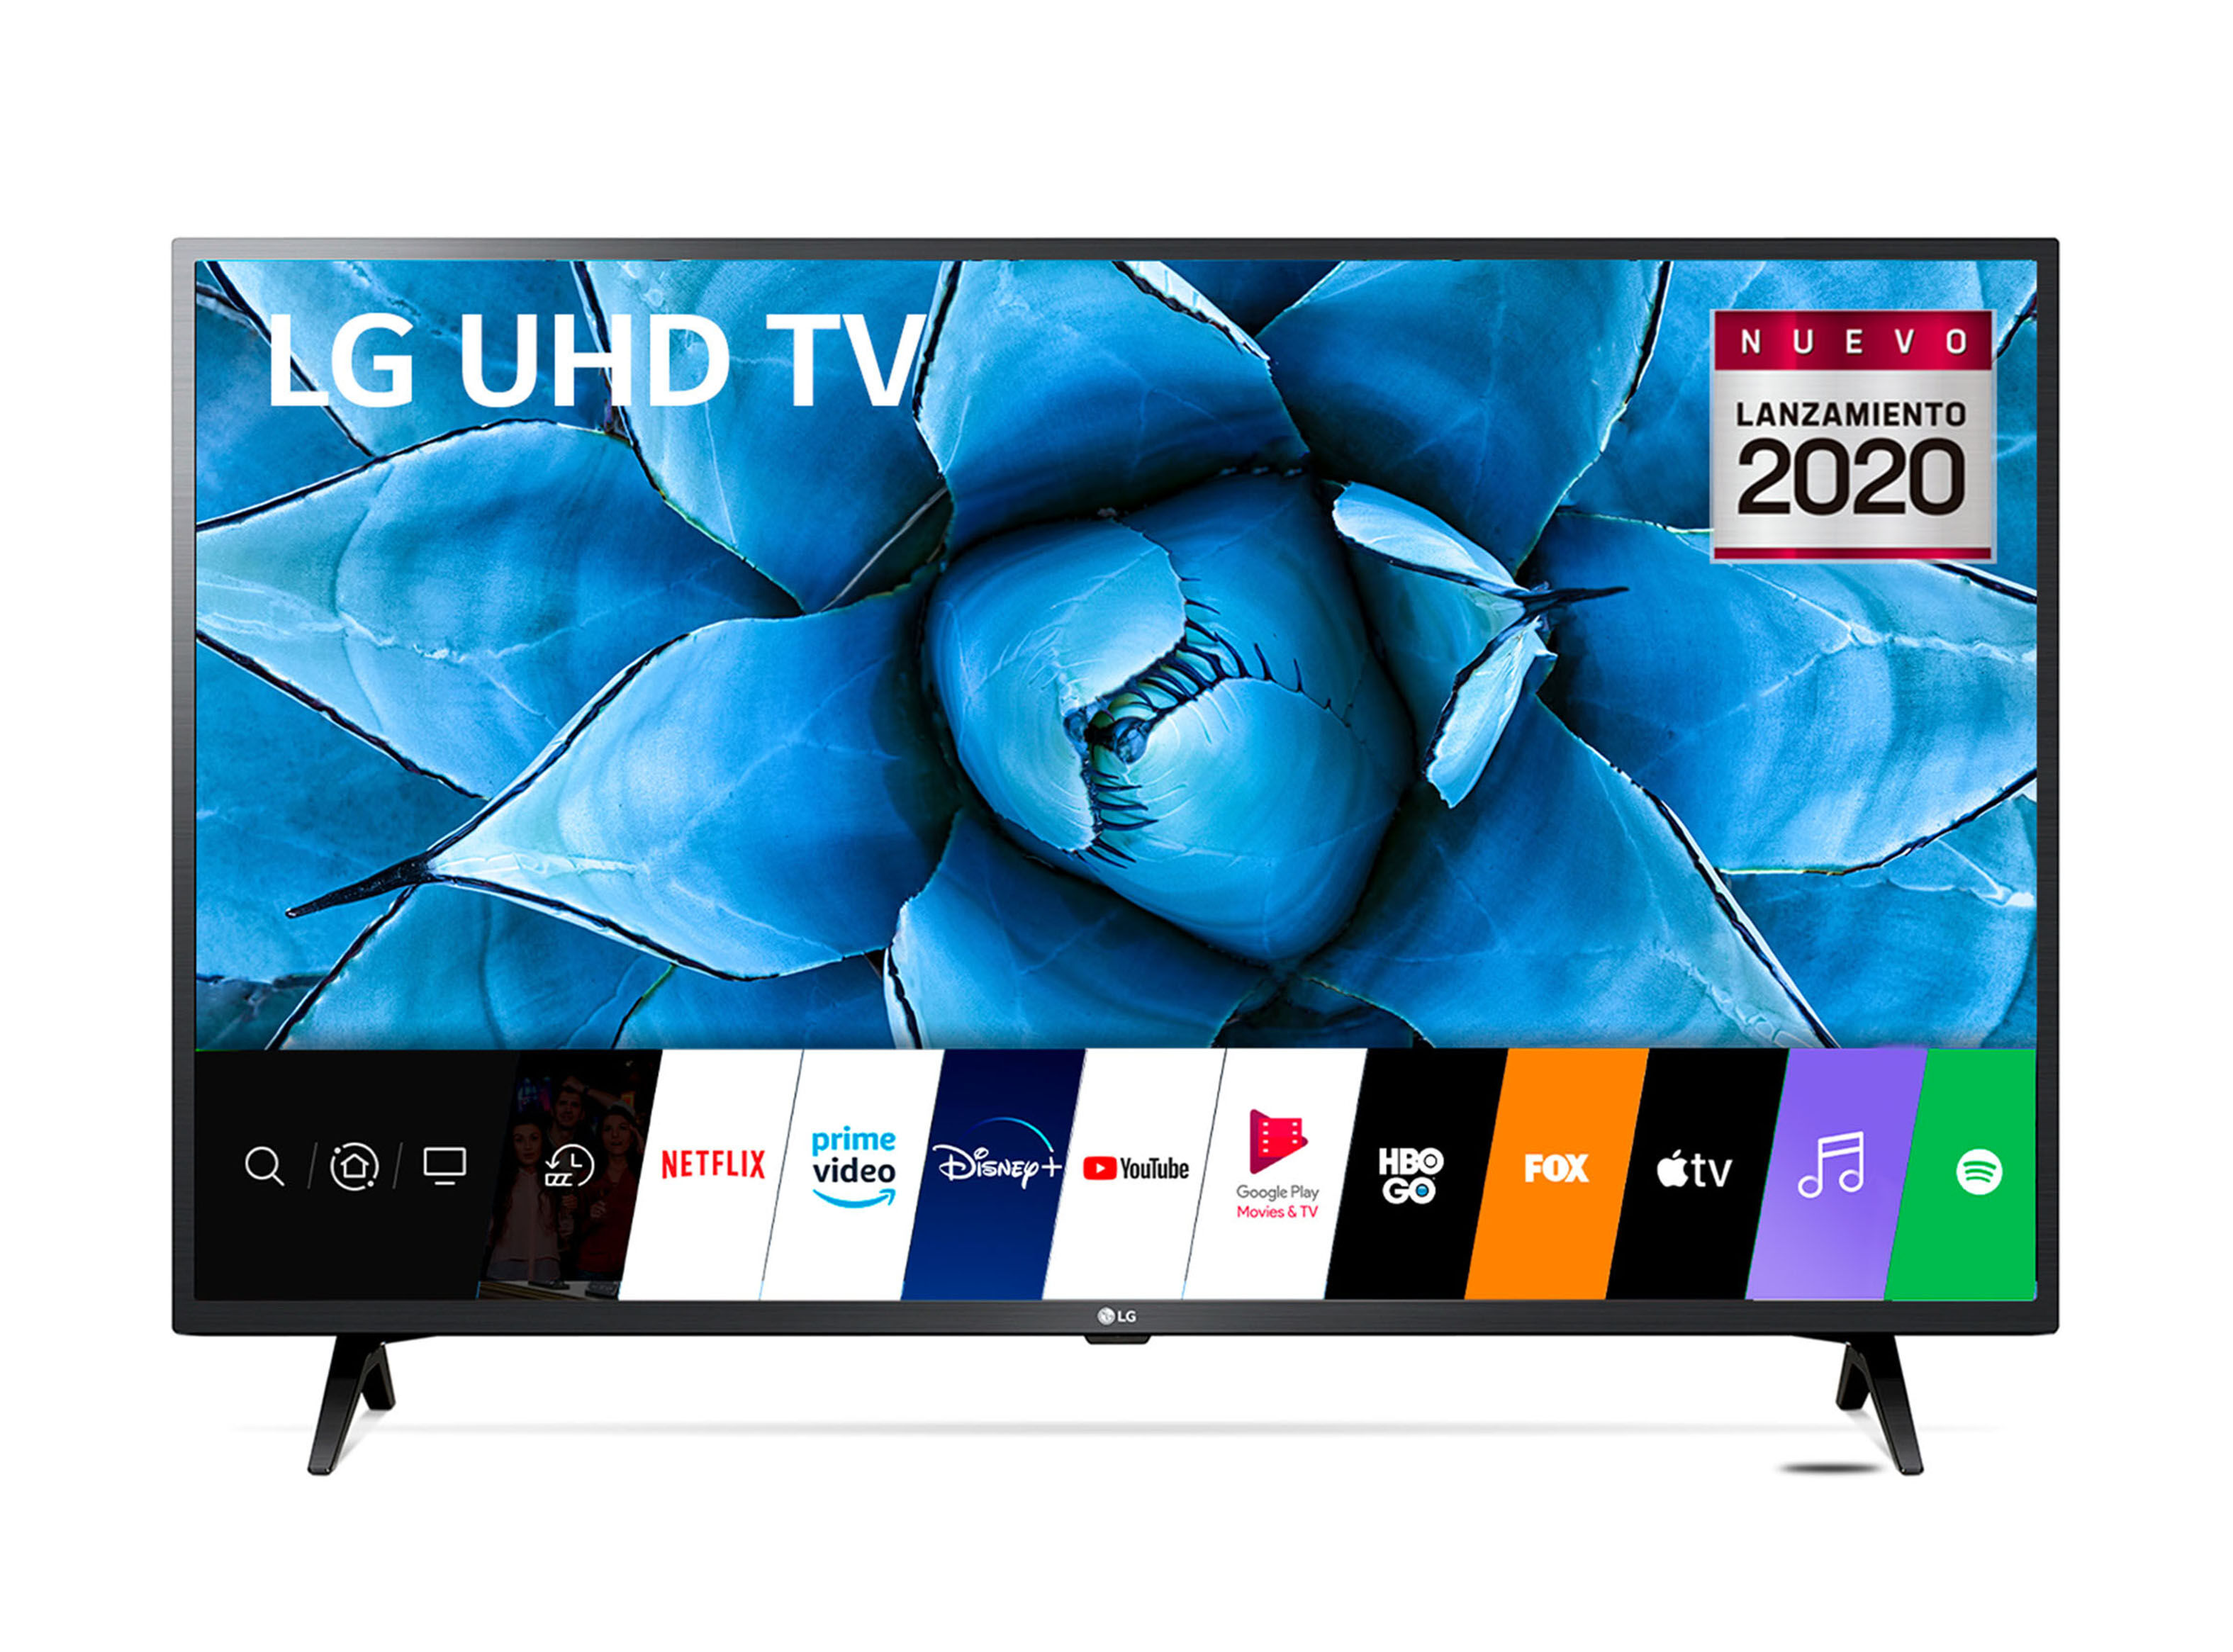 Televisor LG 50 50UR7300PSA Led Ultra HD 4K (2023)